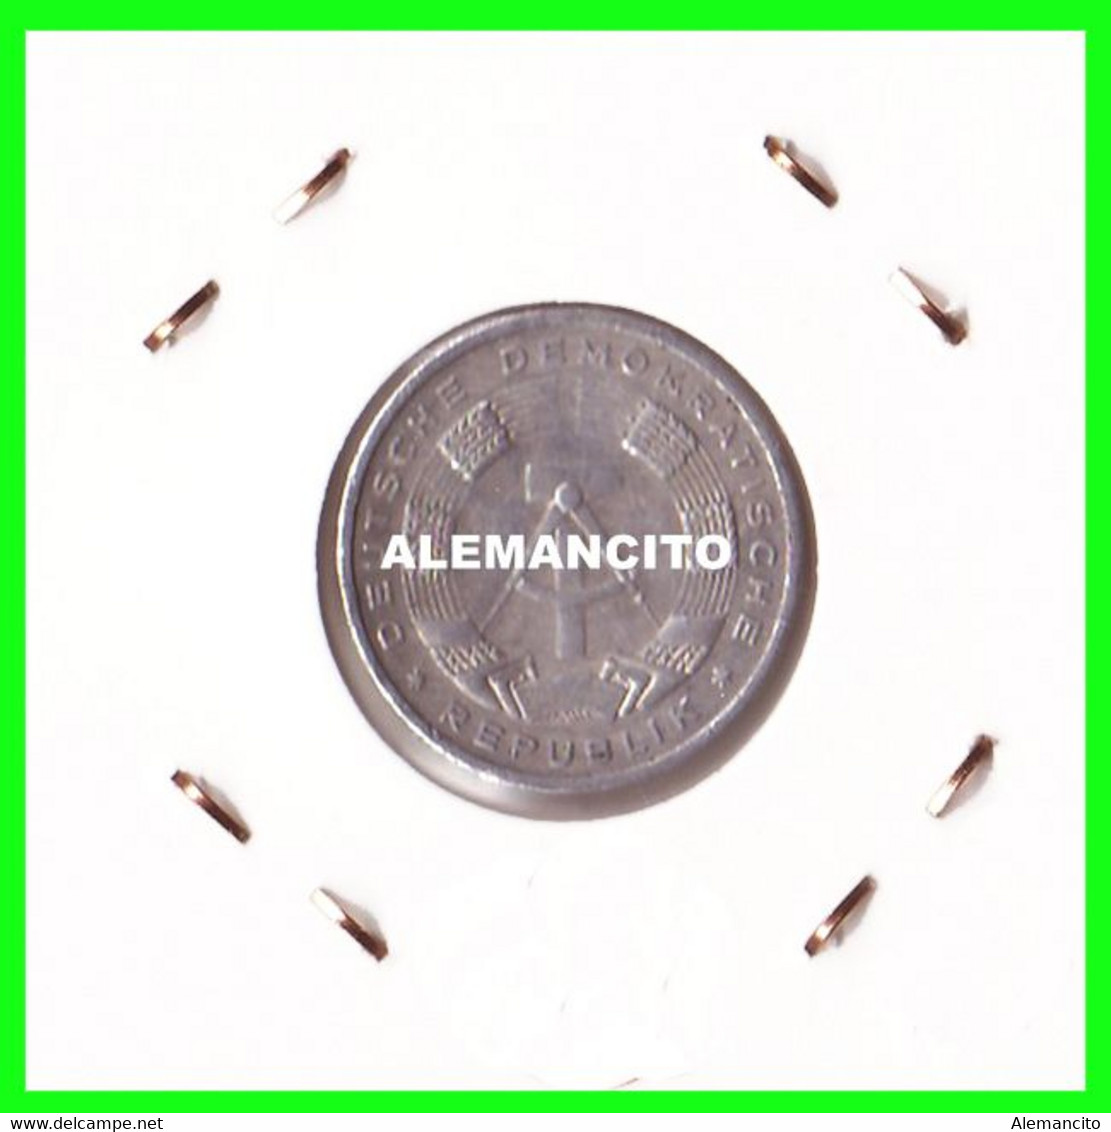 ( GERMANY ) AÑO 1986 REPUBLICA DEMOCRATICA DE ALEMANIA ( DDR ) MONEDAS DE 10 PFENNING  CECA-A MONEDA DE 21 Mm. ALUMINIO - 10 Pfennig